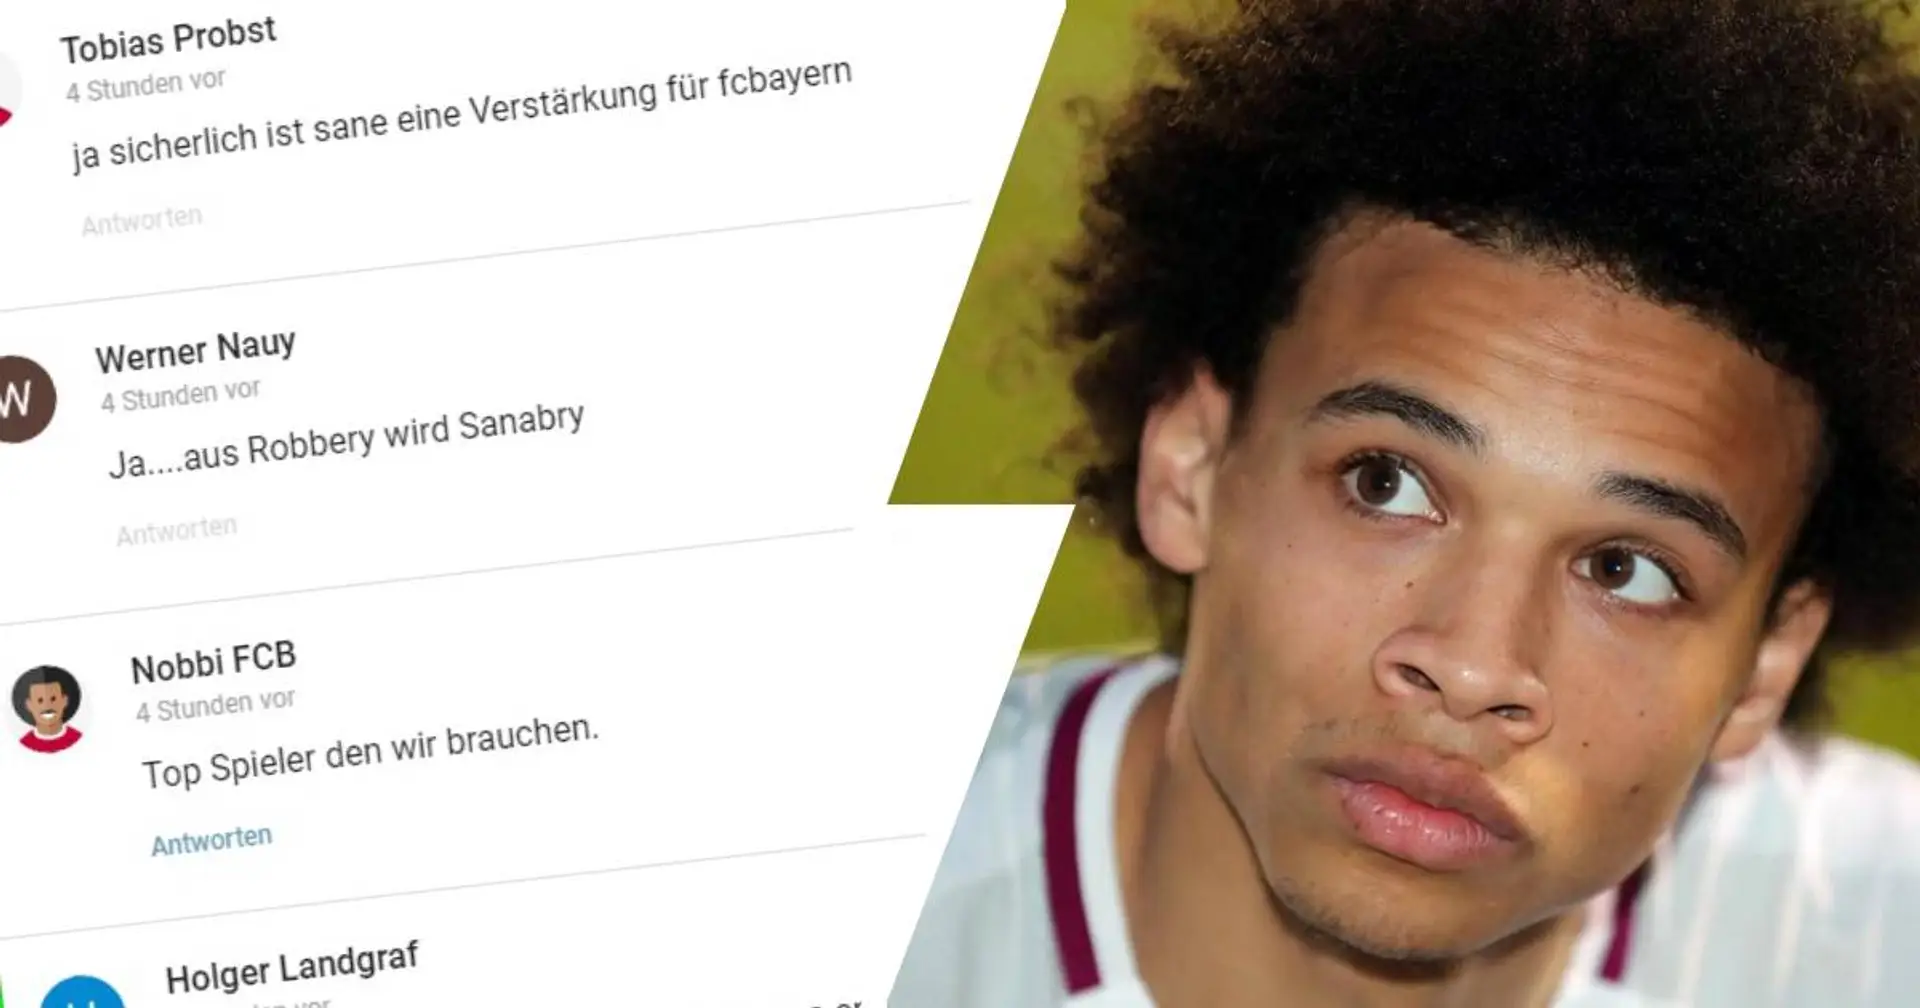 "Einen Versuch ist es wert": Viele Bayern-Fans befürworten mögliche Sane-Verpflichtung